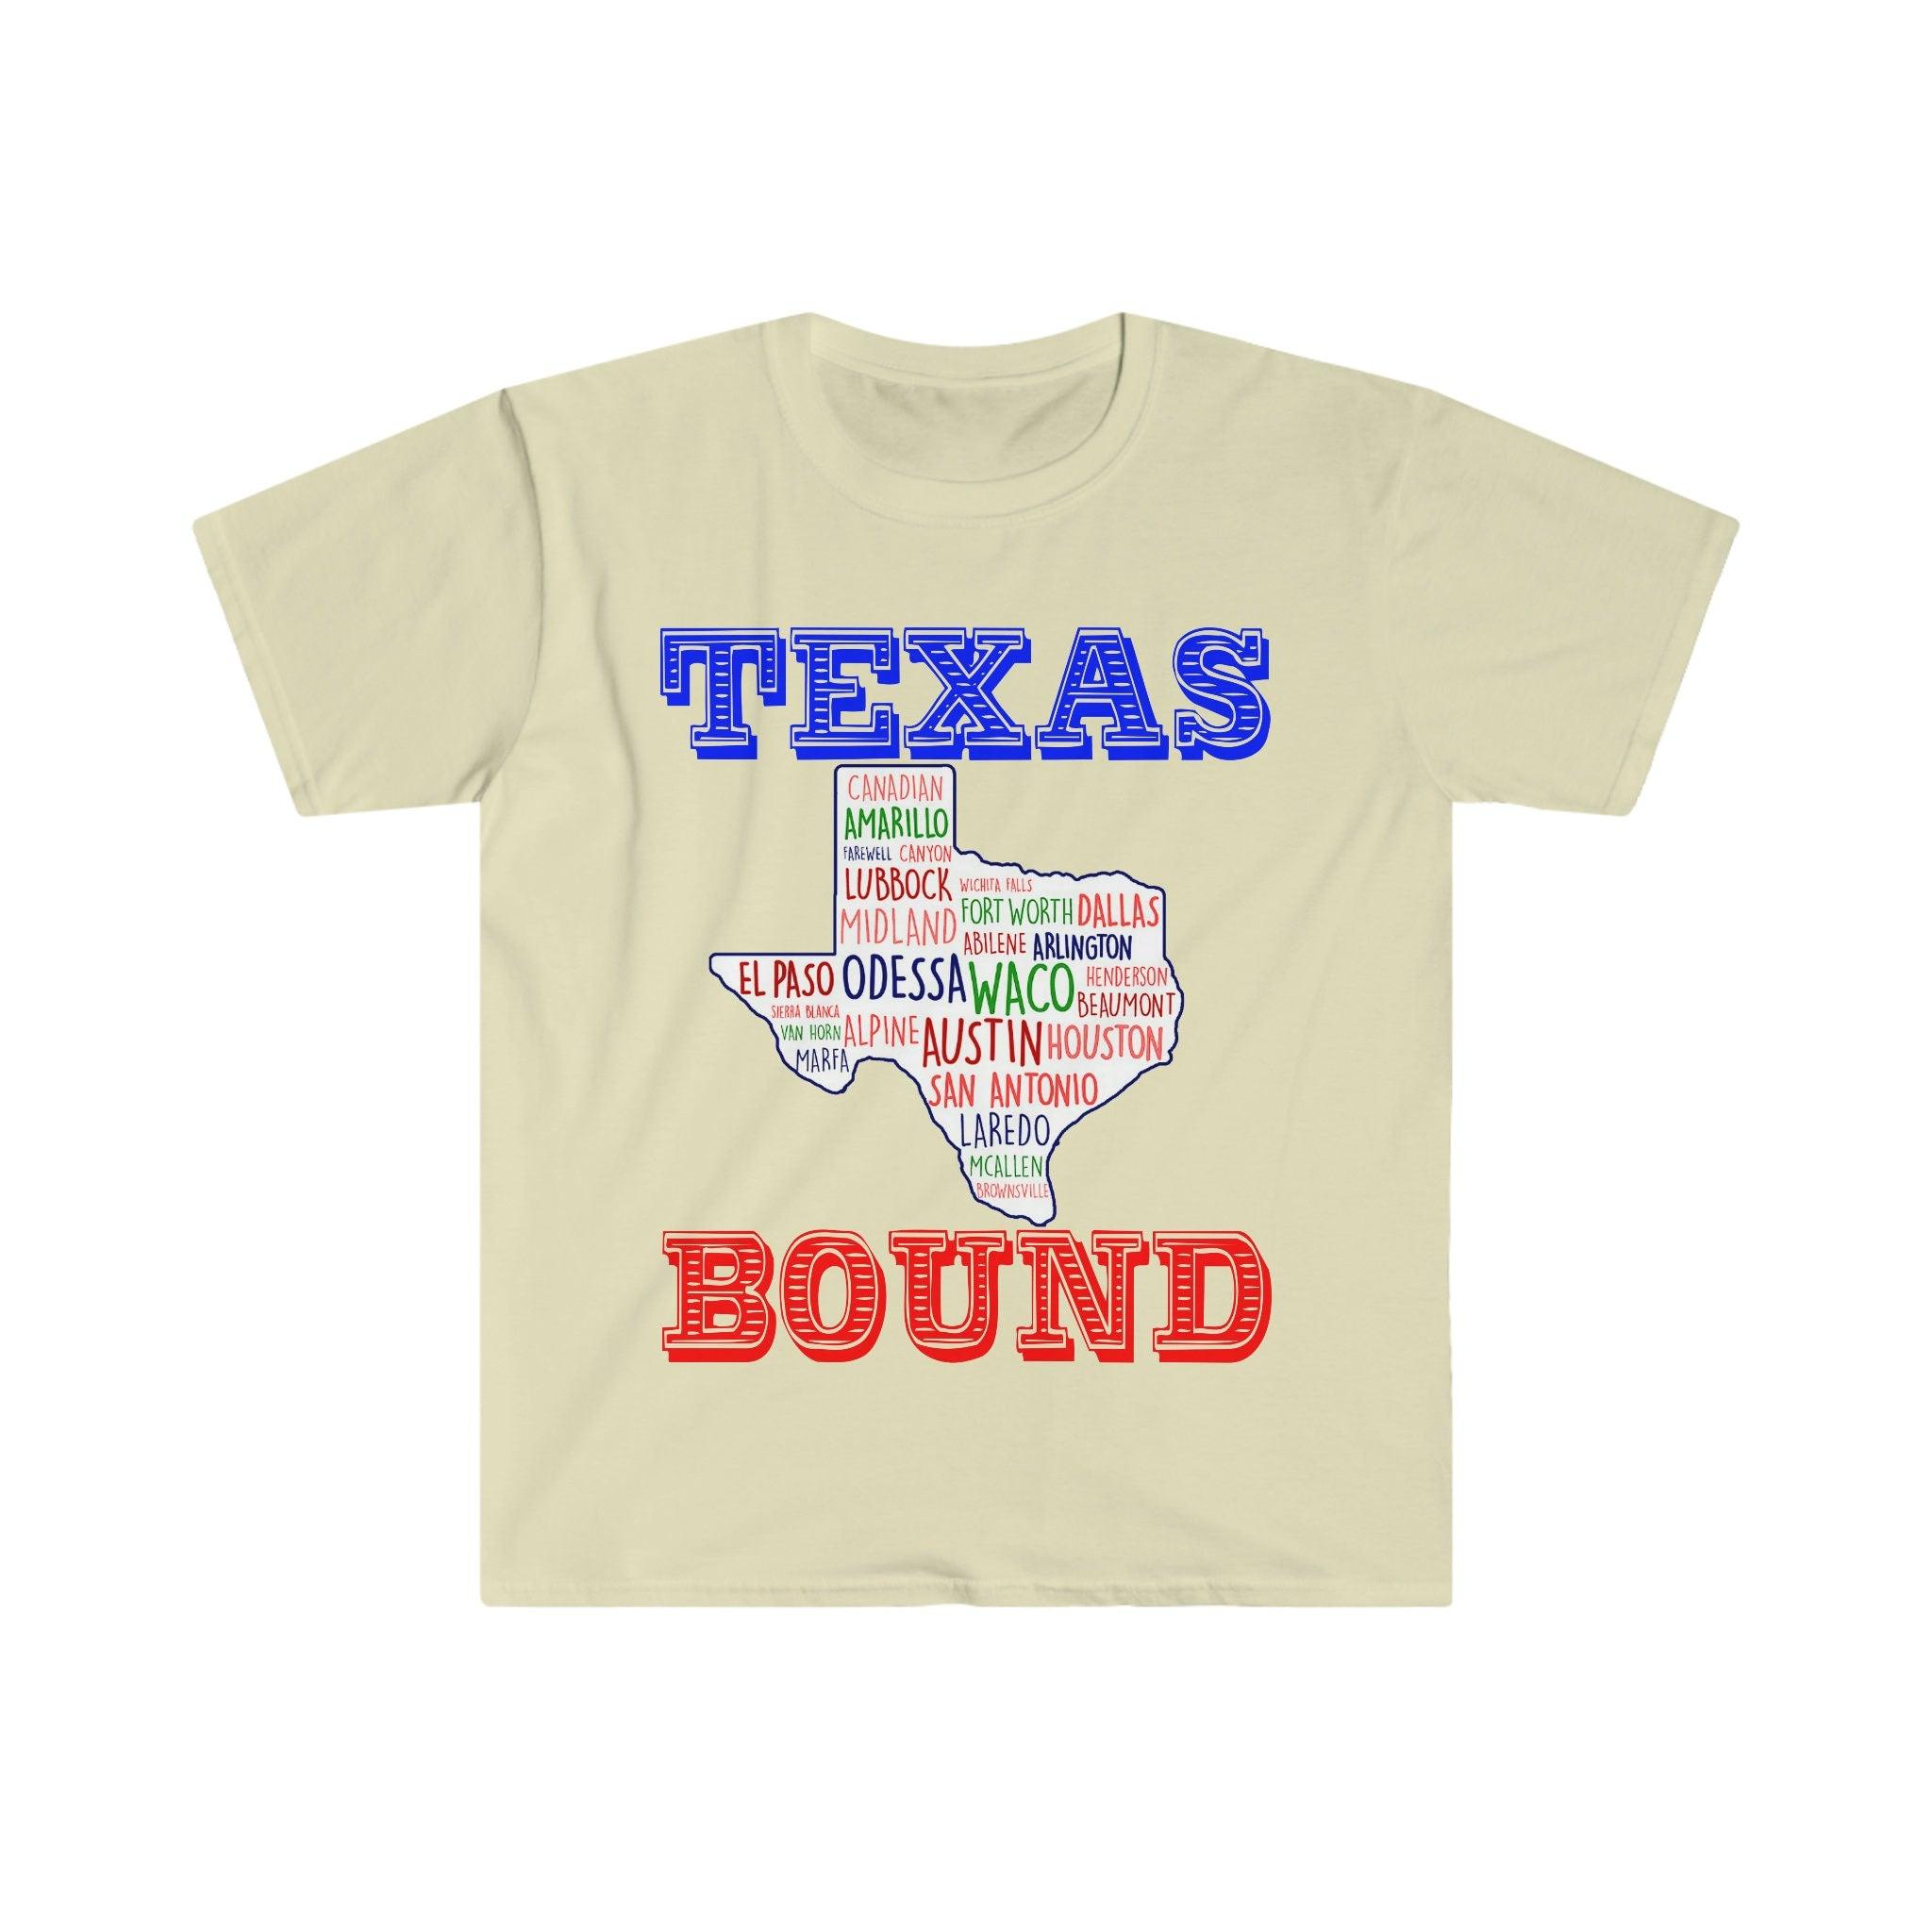 Texas gebonden | Texas Places T-shirts |Texas Map T-shirts, Verhuizen naar Austin, Welkom bij Texas Gift, Texas Bound, Nieuw in Texas, Verhuizen naar DFW Beat Biden belastingverhoging, Biden belastingplan, kust liberaal, Houston, verhuizen naar Austin, Verhuizen naar DFW, verhuizen naar Texas, verhuizen naar Texas mok, nieuw in Texas, Republikeins, Tee, tees, Texas gebonden, Texas meisje, Texas republikein in - plusminusco.com